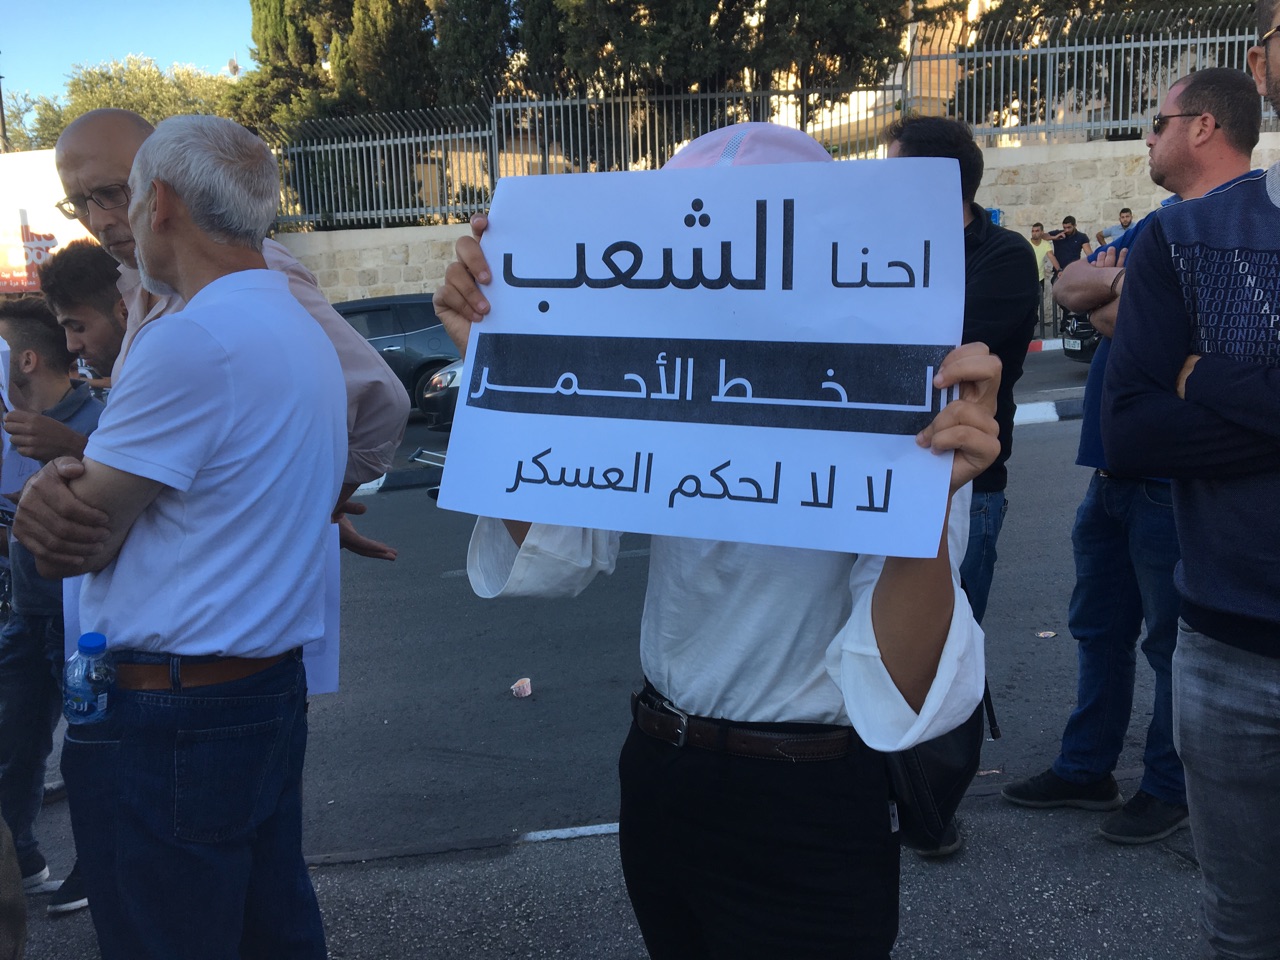 دعوات للمشاركة في مسيرة رافضة لعقوبات غزة في رام الله اليوم